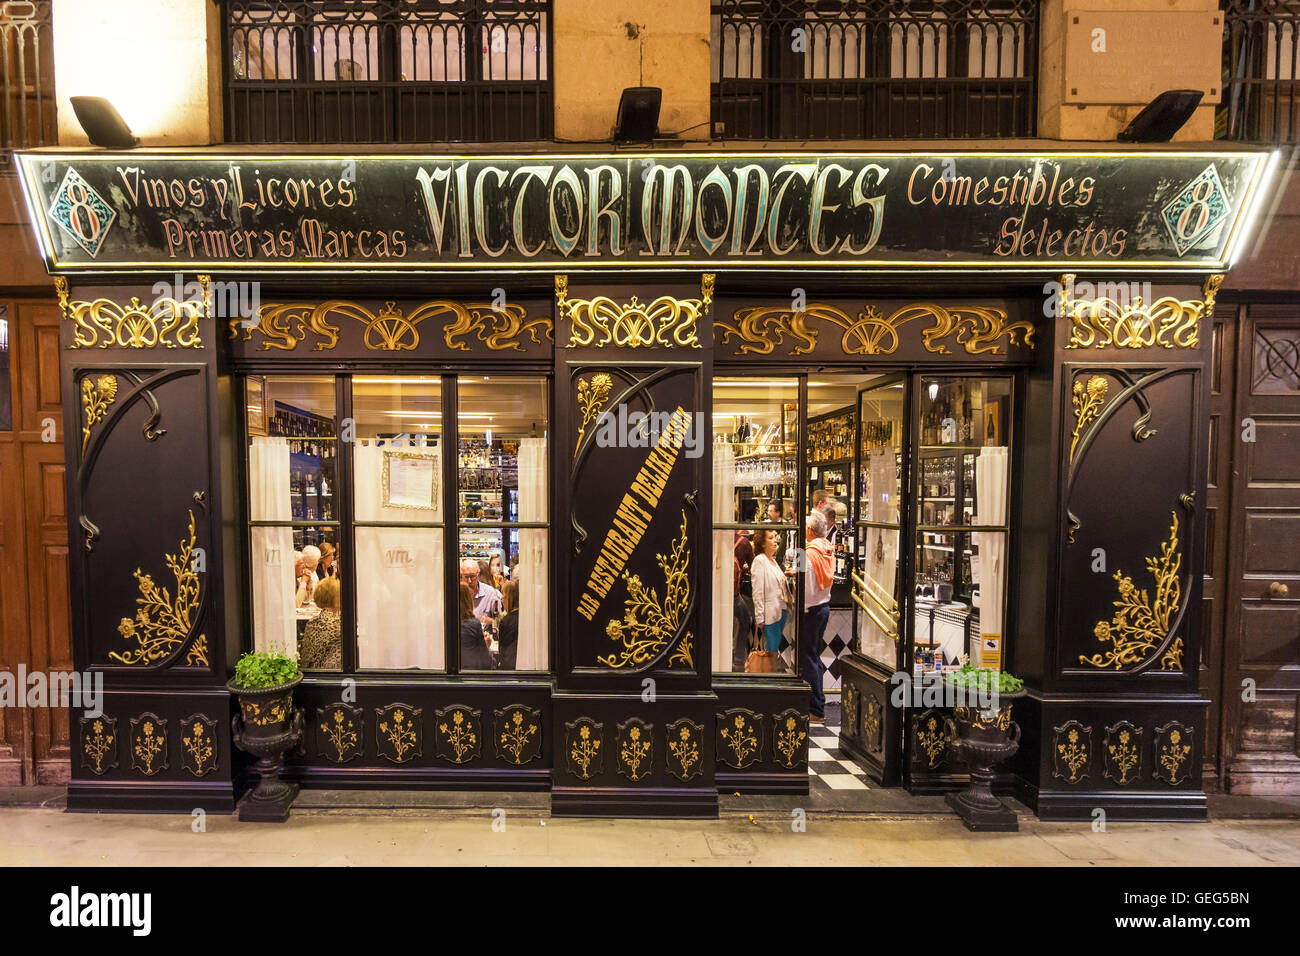 Das historische Victor Montes Restaurant im Plaza Nueva, Bilbao, Baskenland, Spanien Stockfoto